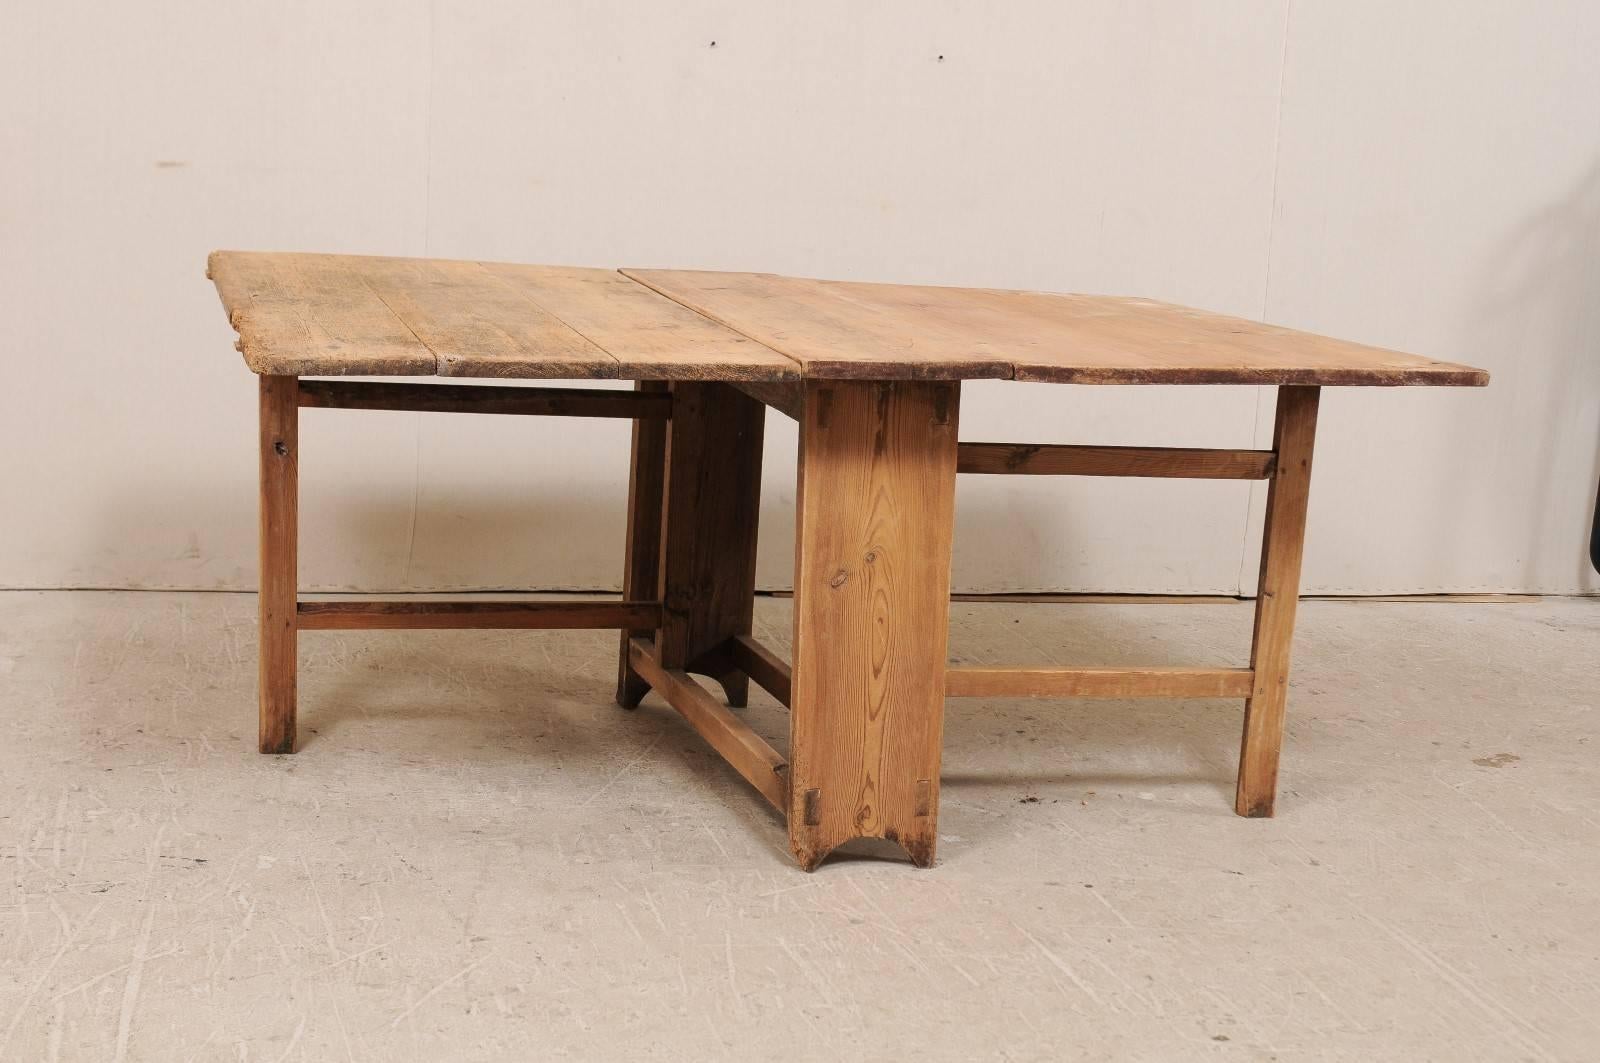 Table suédoise du début du 19e siècle en bois, à abattant et pieds de porte. Cette table suédoise antique est dotée de deux côtés à abattant qui prolongent la table jusqu'à 66,5